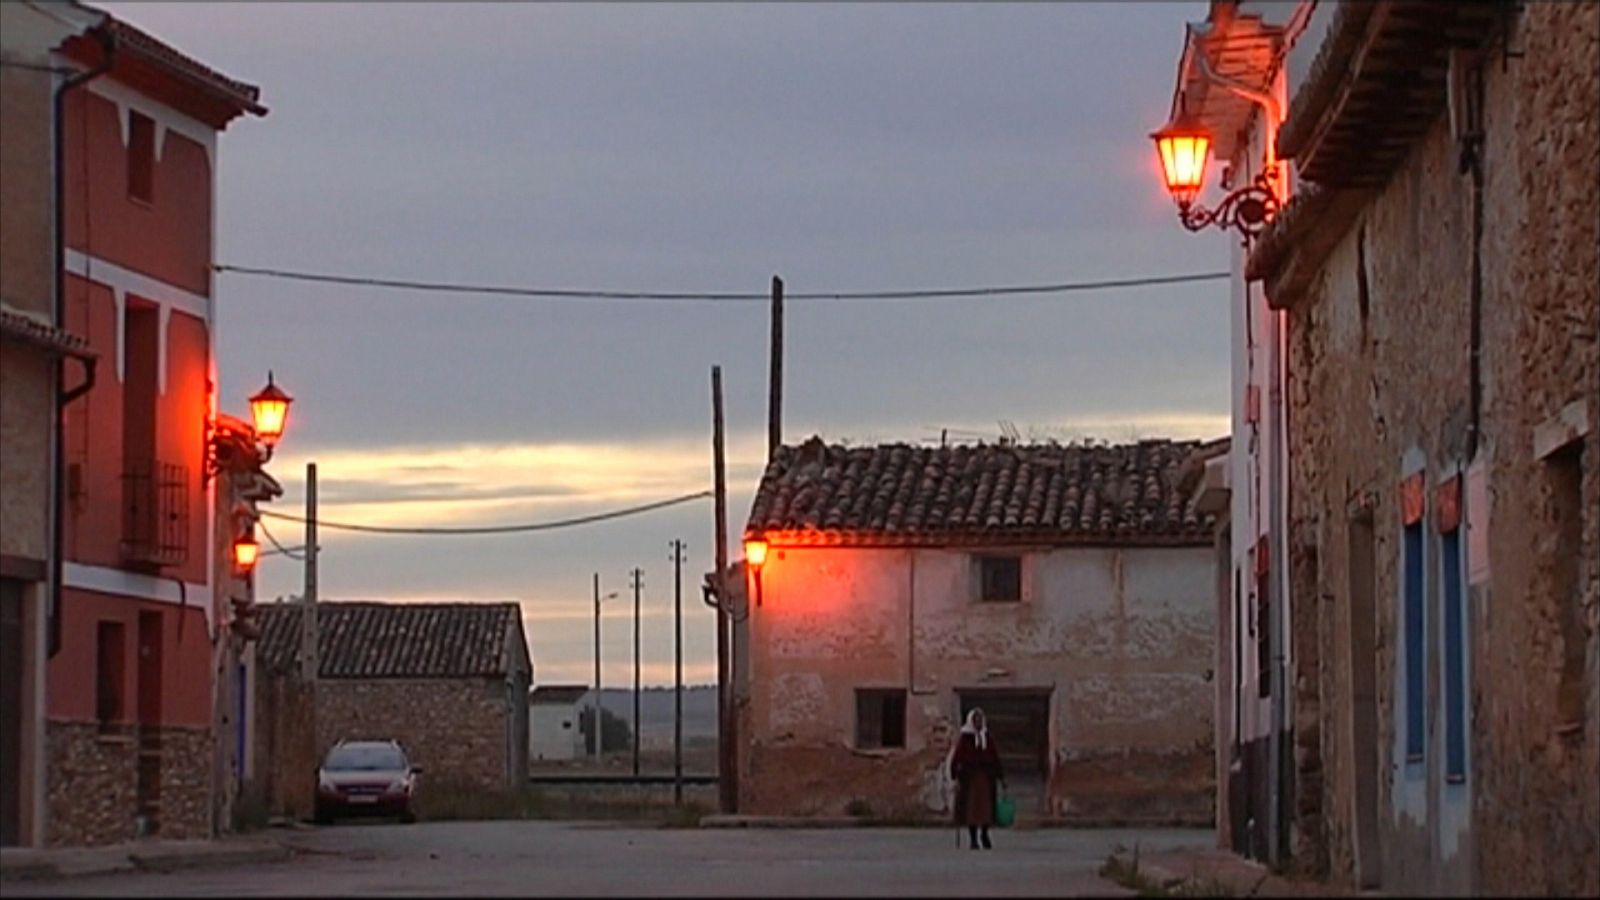 Teruel: la imaginación contra el desierto - Avance